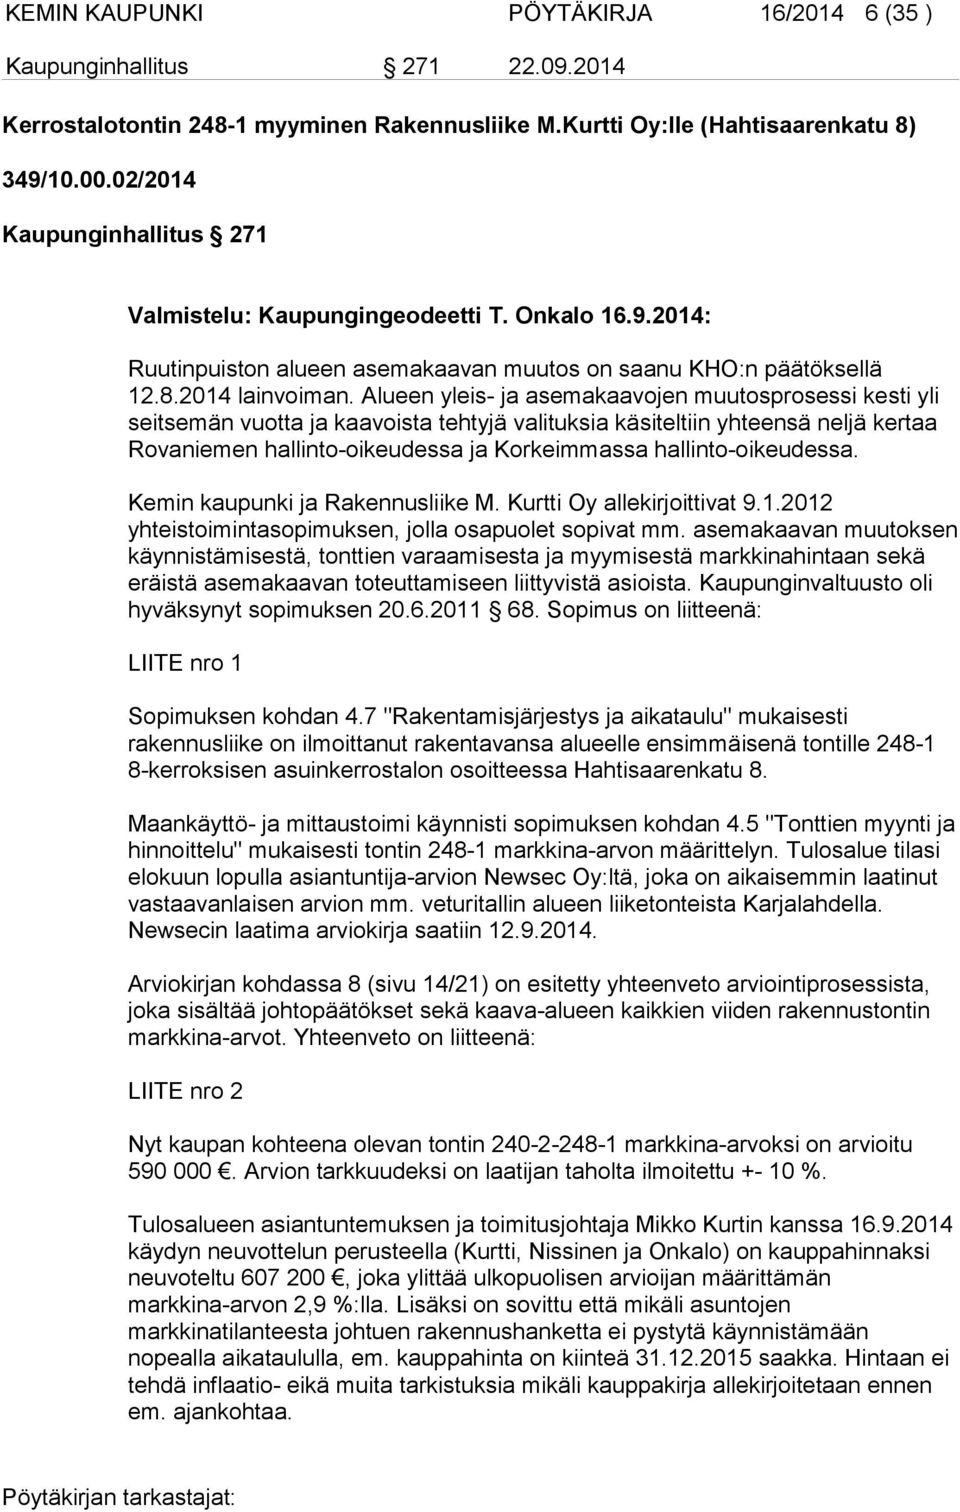 Alueen yleis- ja asemakaavojen muutosprosessi kesti yli seitsemän vuotta ja kaavoista tehtyjä valituksia käsiteltiin yhteensä neljä kertaa Rovaniemen hallinto-oikeudessa ja Korkeimmassa